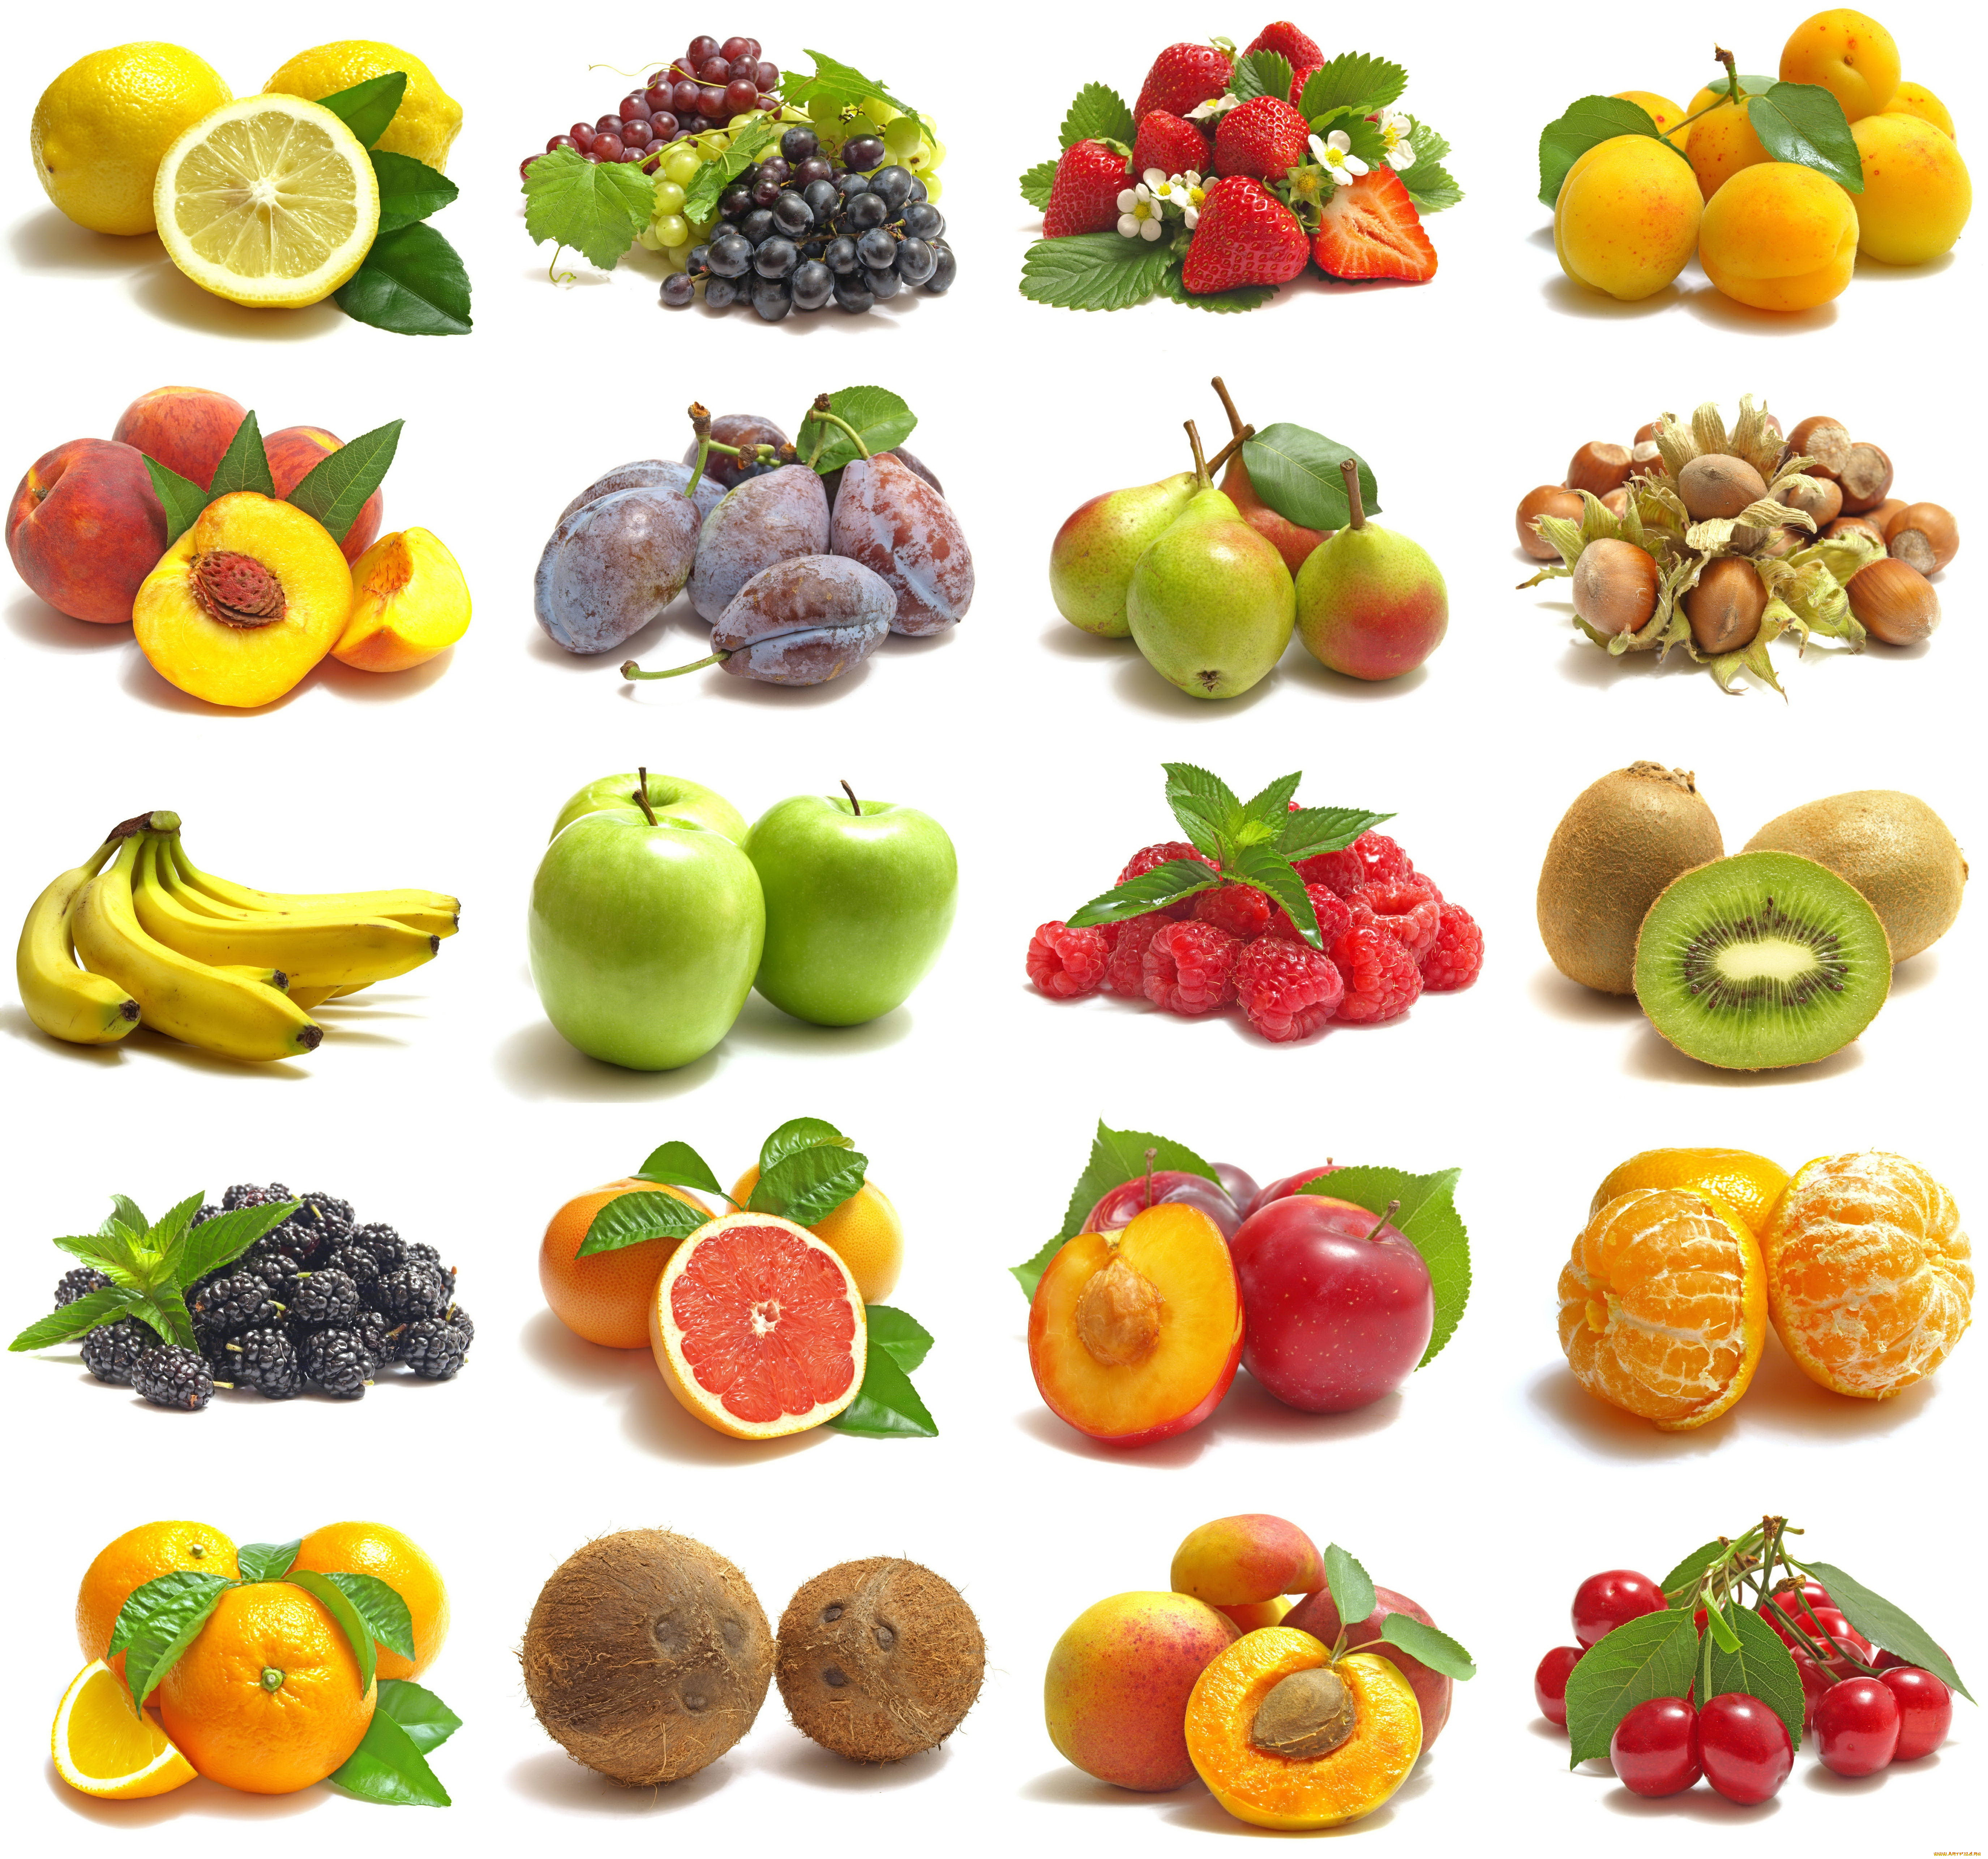 еда, разное, орехи, разрез, продукты, белый, фон, фрукты, ягоды, коллаж, бананы, яблоки, малина, персики, слива, груши, киви, апельсины, клубника, виноград, лимон